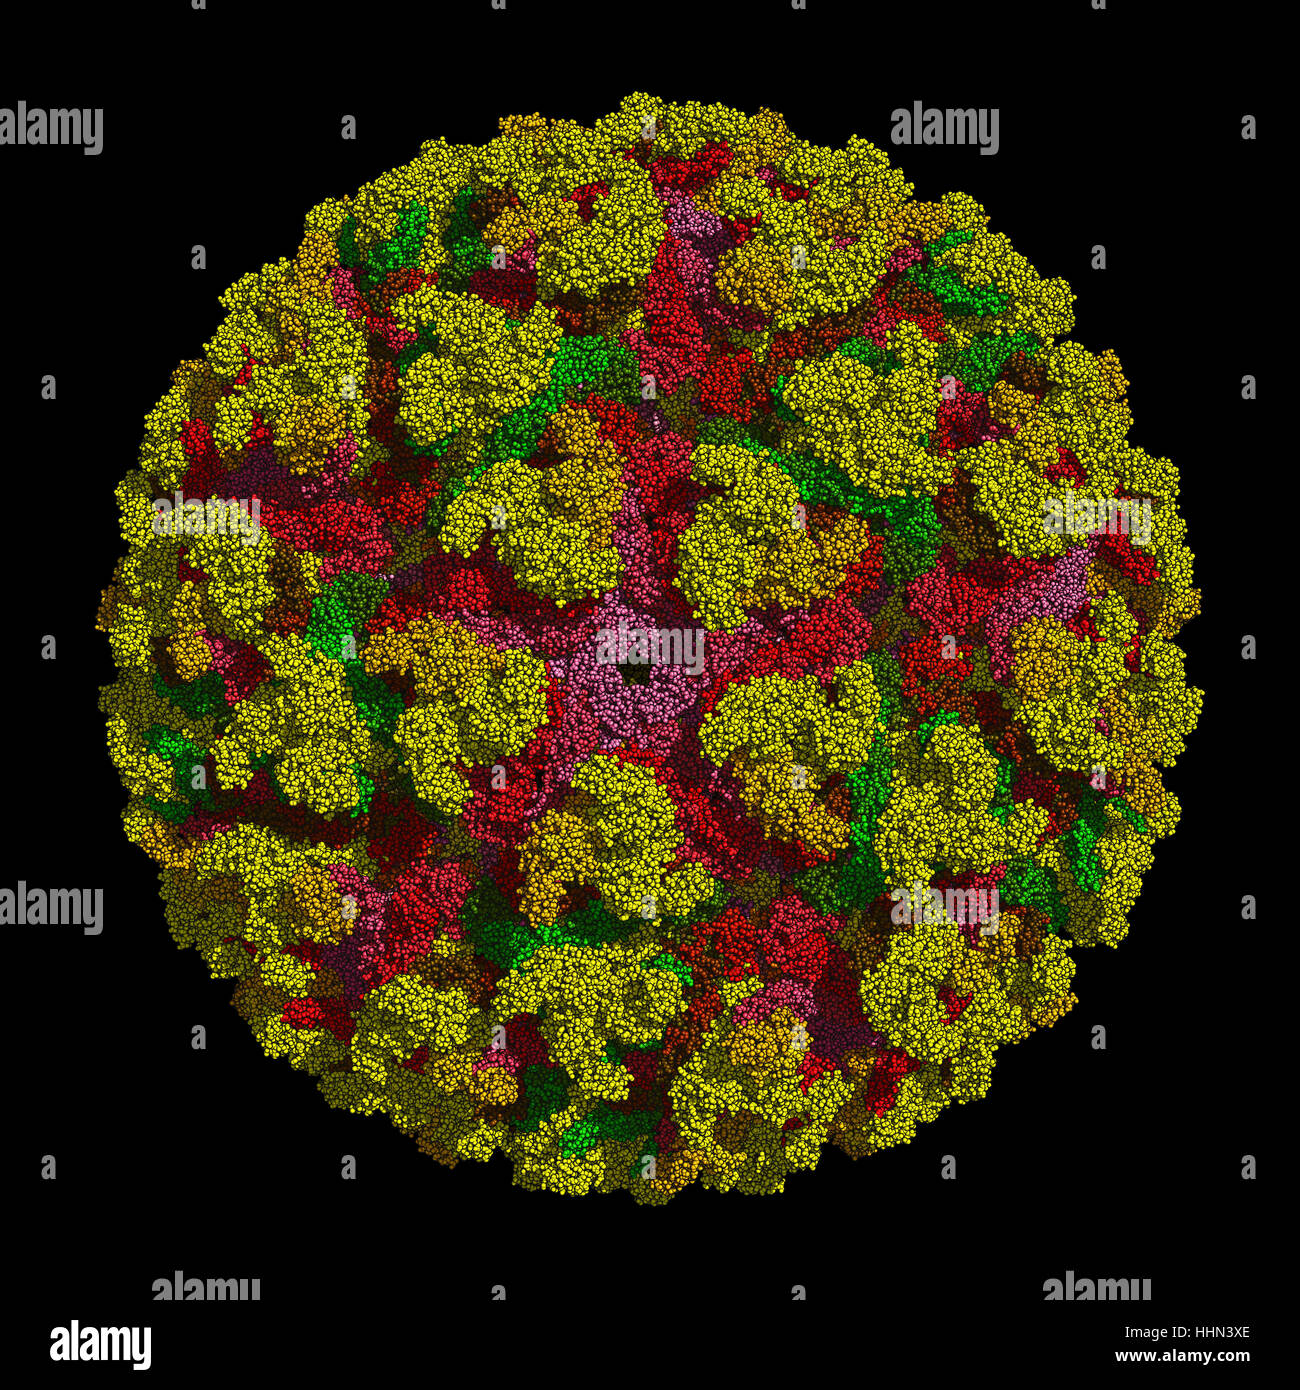 Virus Chikungunya que provoca el chikungunya enfermedad transmitida por los mosquitos Aedes. El HD 3D modelo muestra la estructura a nivel atómico. Foto de stock